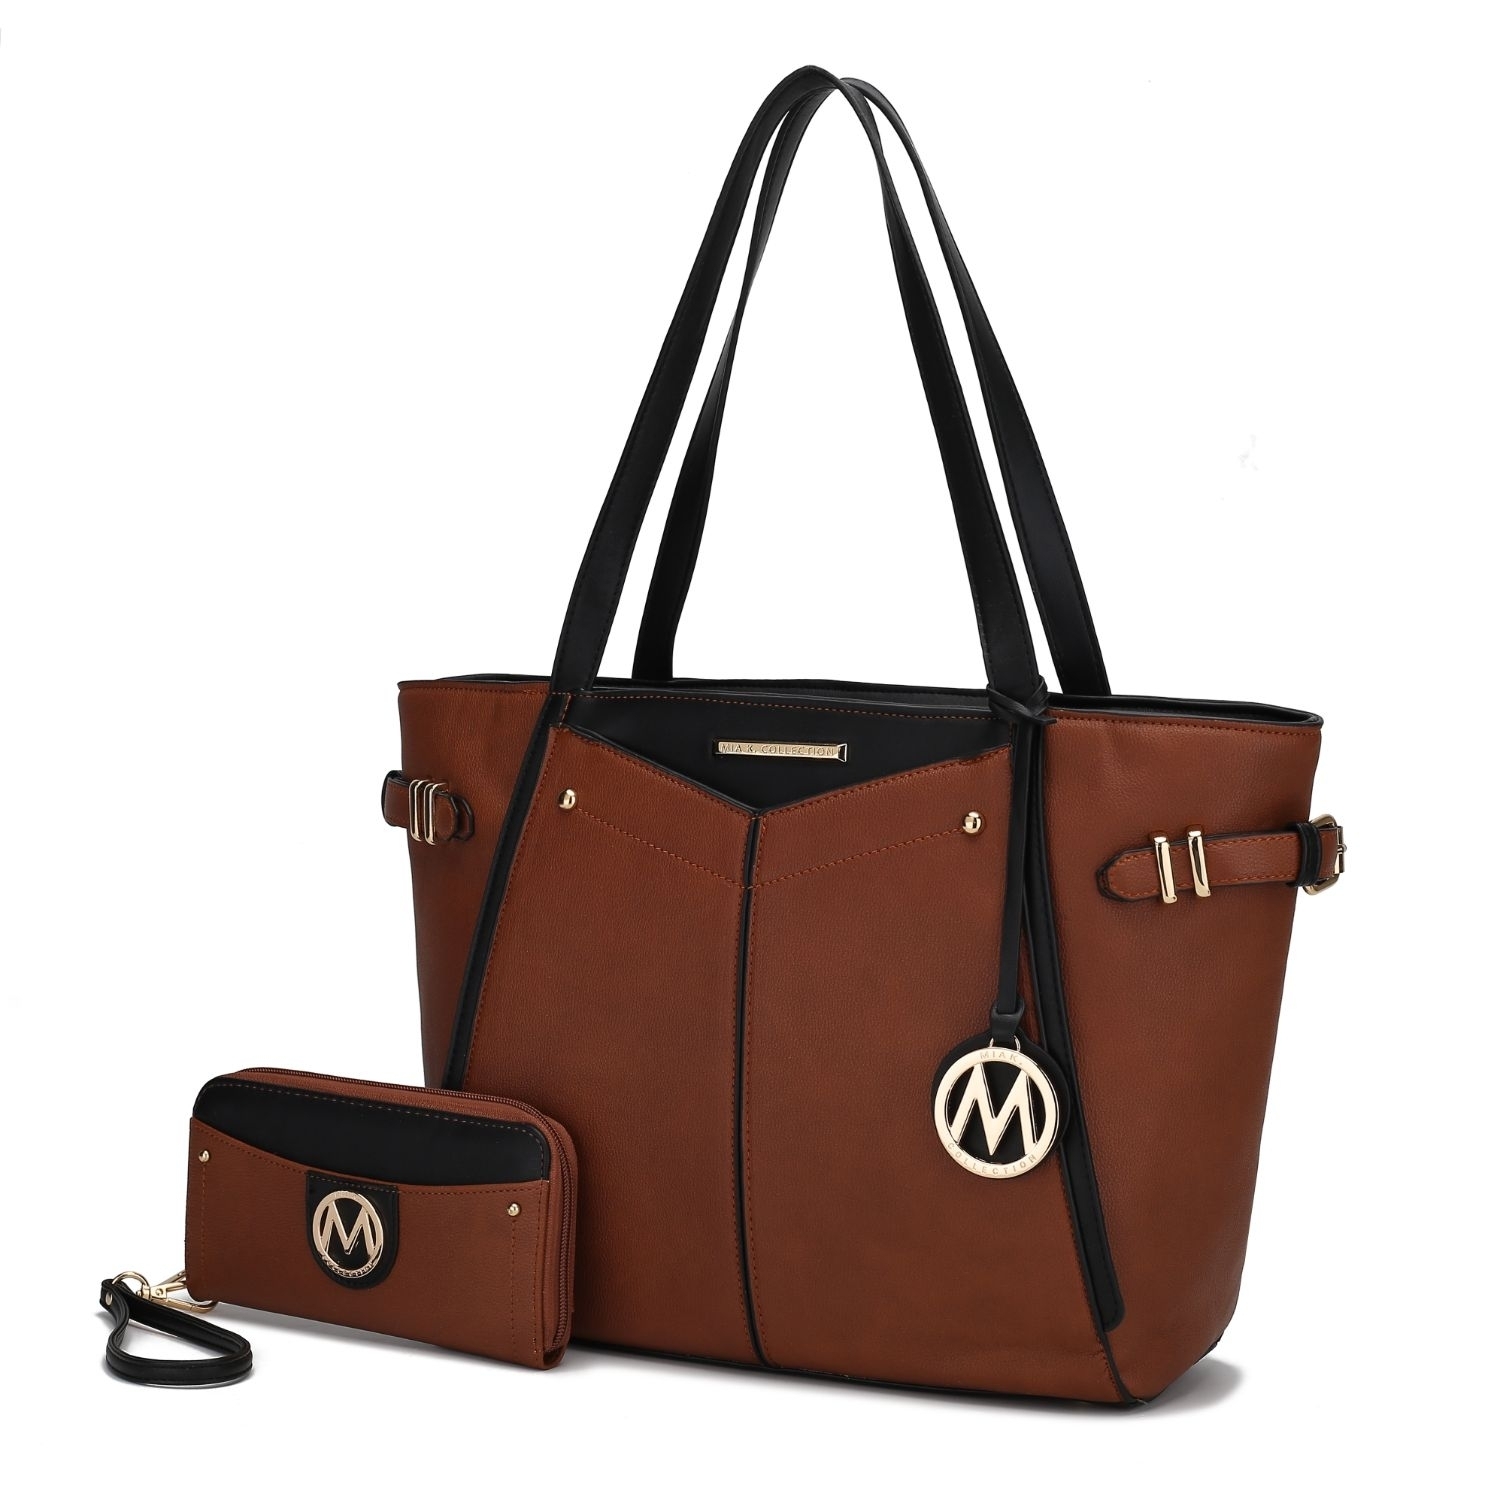 MKF Collection Morgan Tote Handbag By Mia K. - Cognac Black